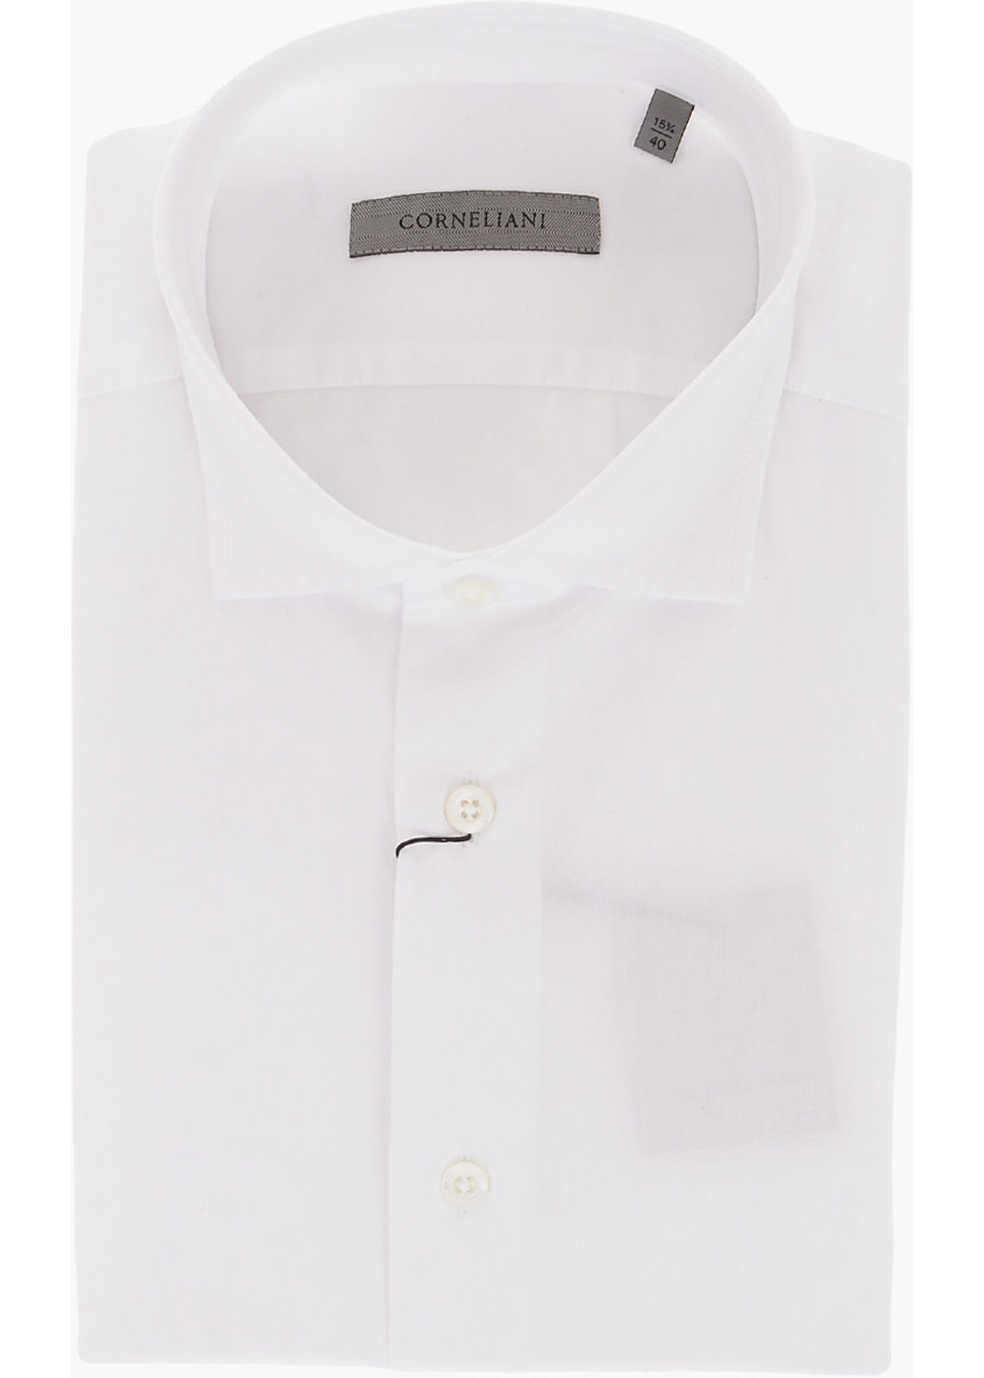 CORNELIANI Cotton Shirt With Geometric Patterned Bottom White